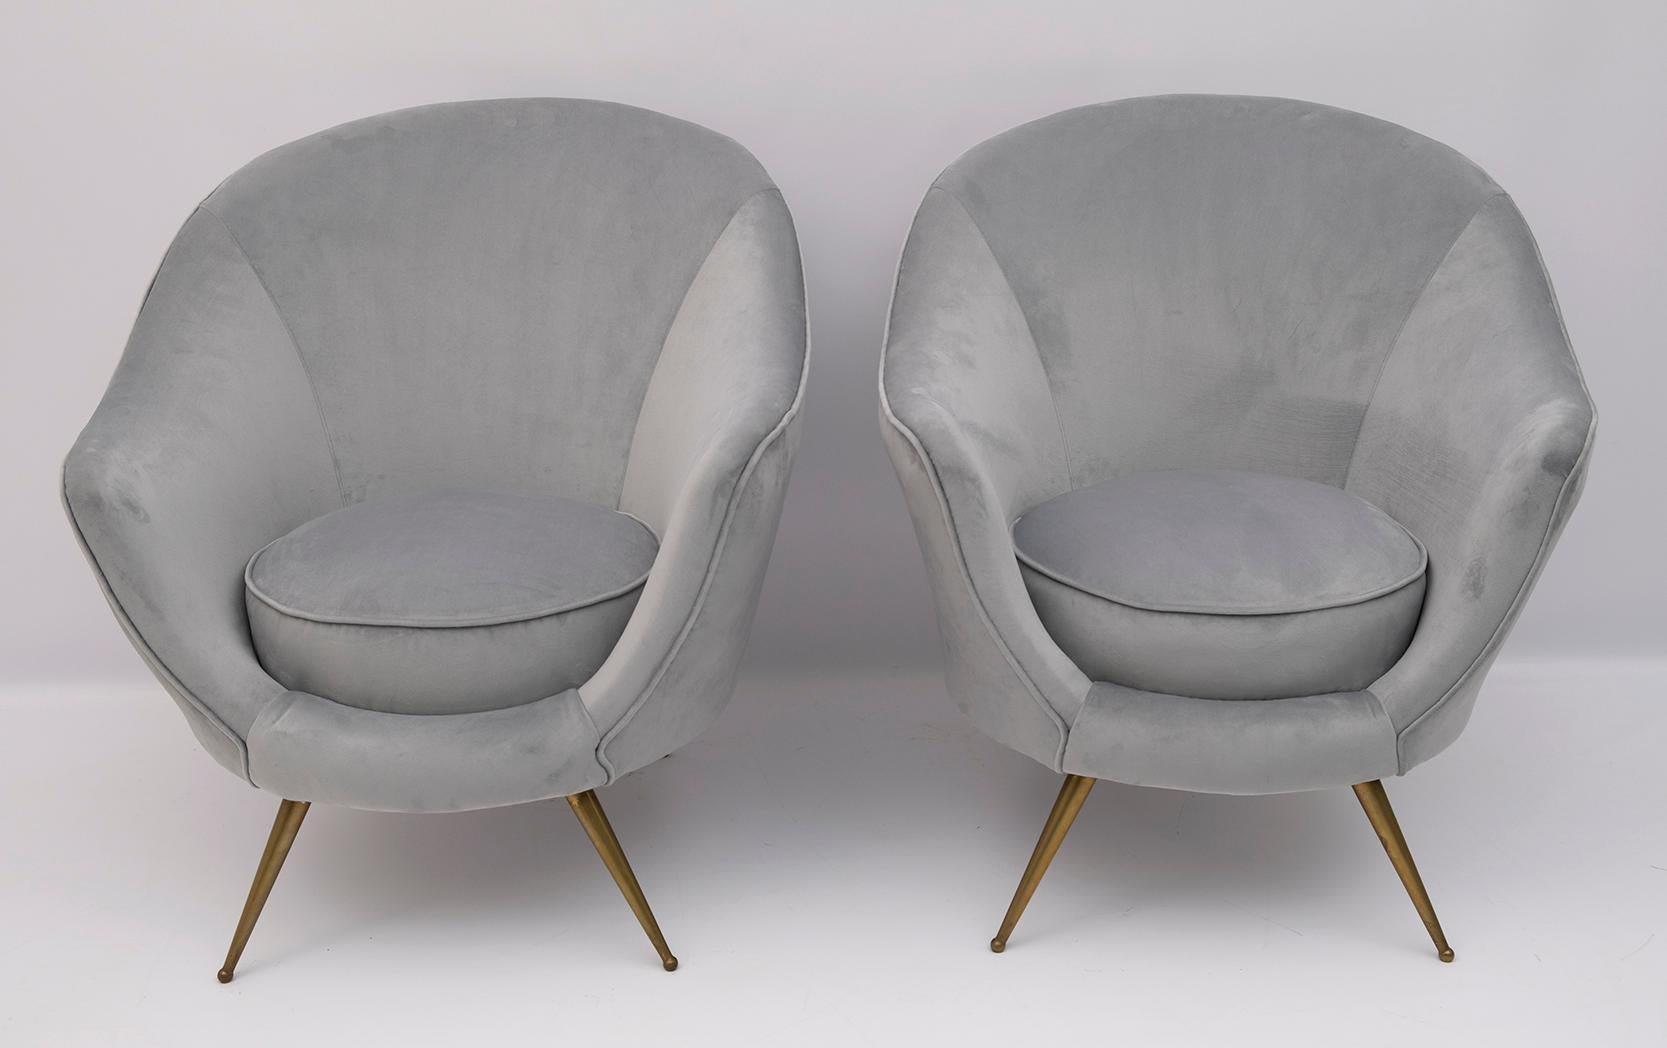 Schönes Paar Sessel, entworfen von Federico Munari in den frühen 1950er Jahren. Die Polsterung wurde mit Samt neu bezogen.


Das Sofa misst cm: B 147 x T 85 x H 87 x S 42.